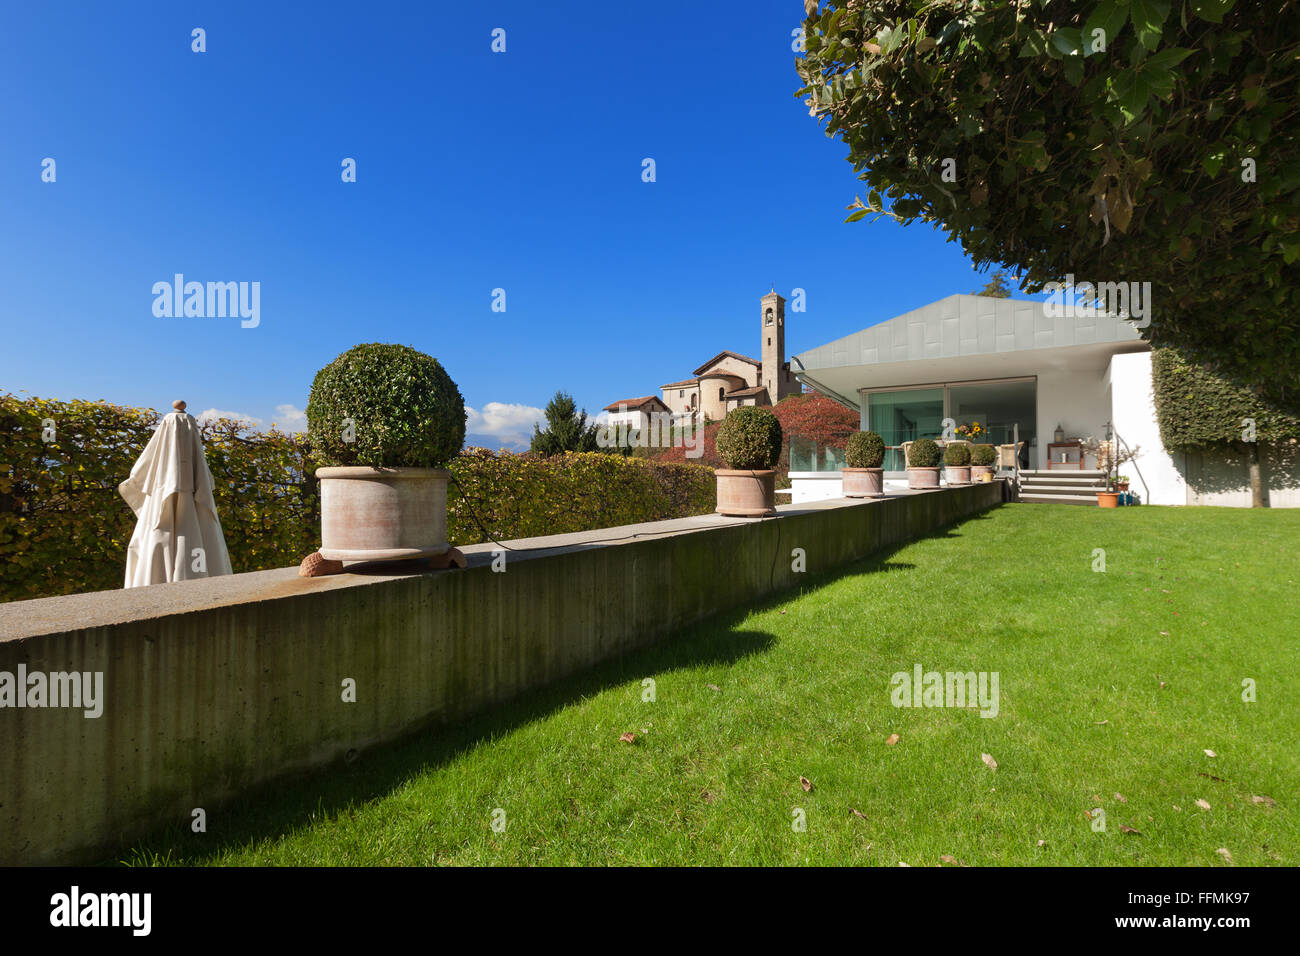 La arquitectura, la casa moderna, vista desde el jardín Foto de stock